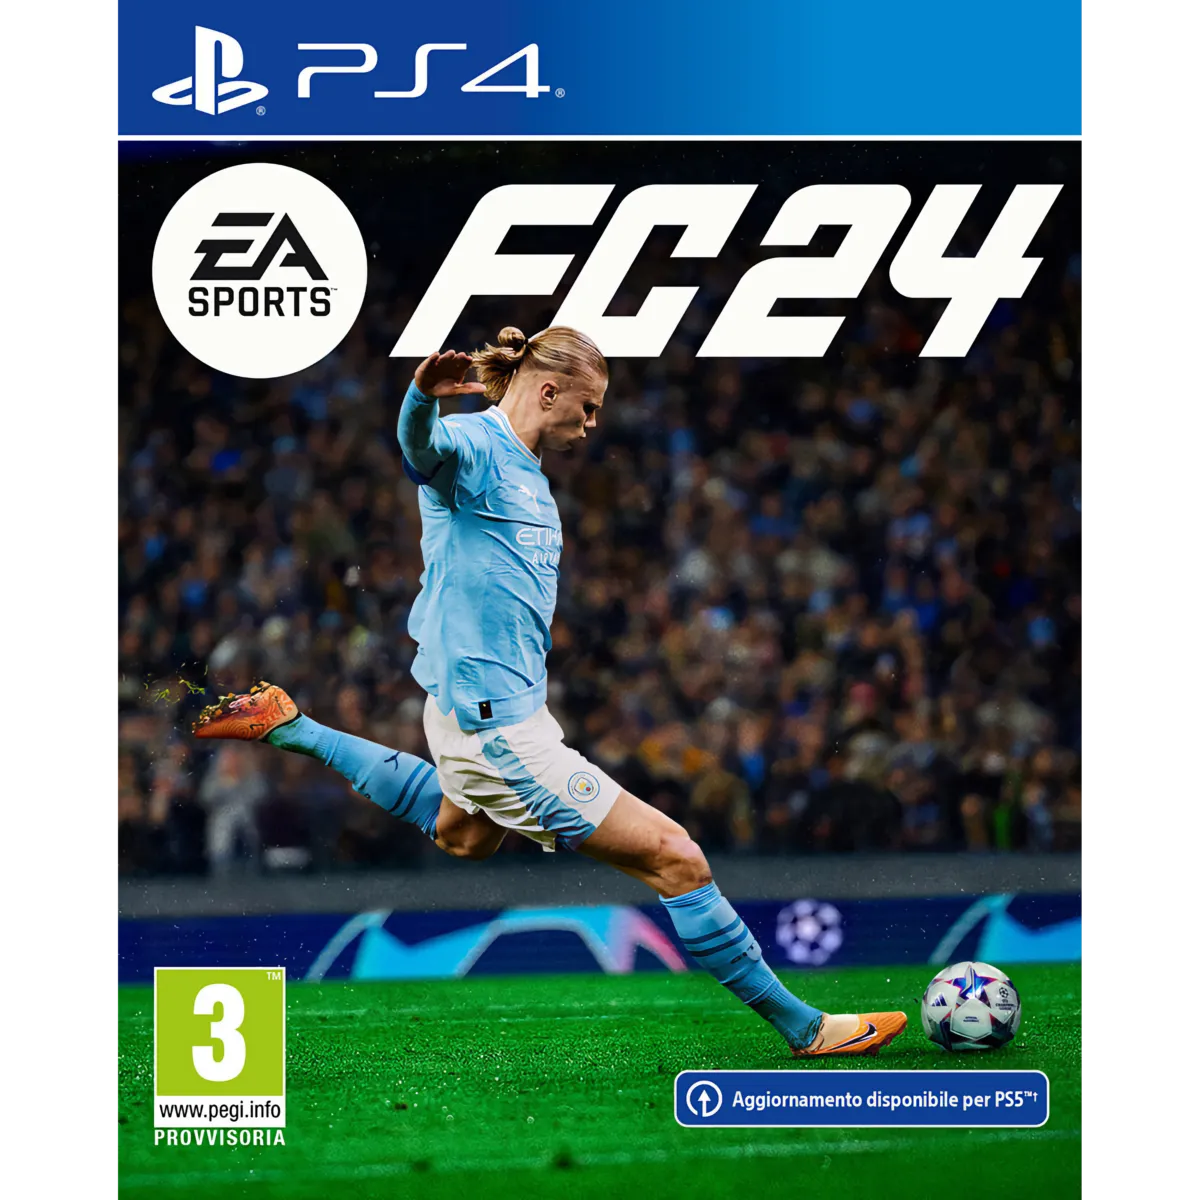 EA SPORTS FC24 PS4